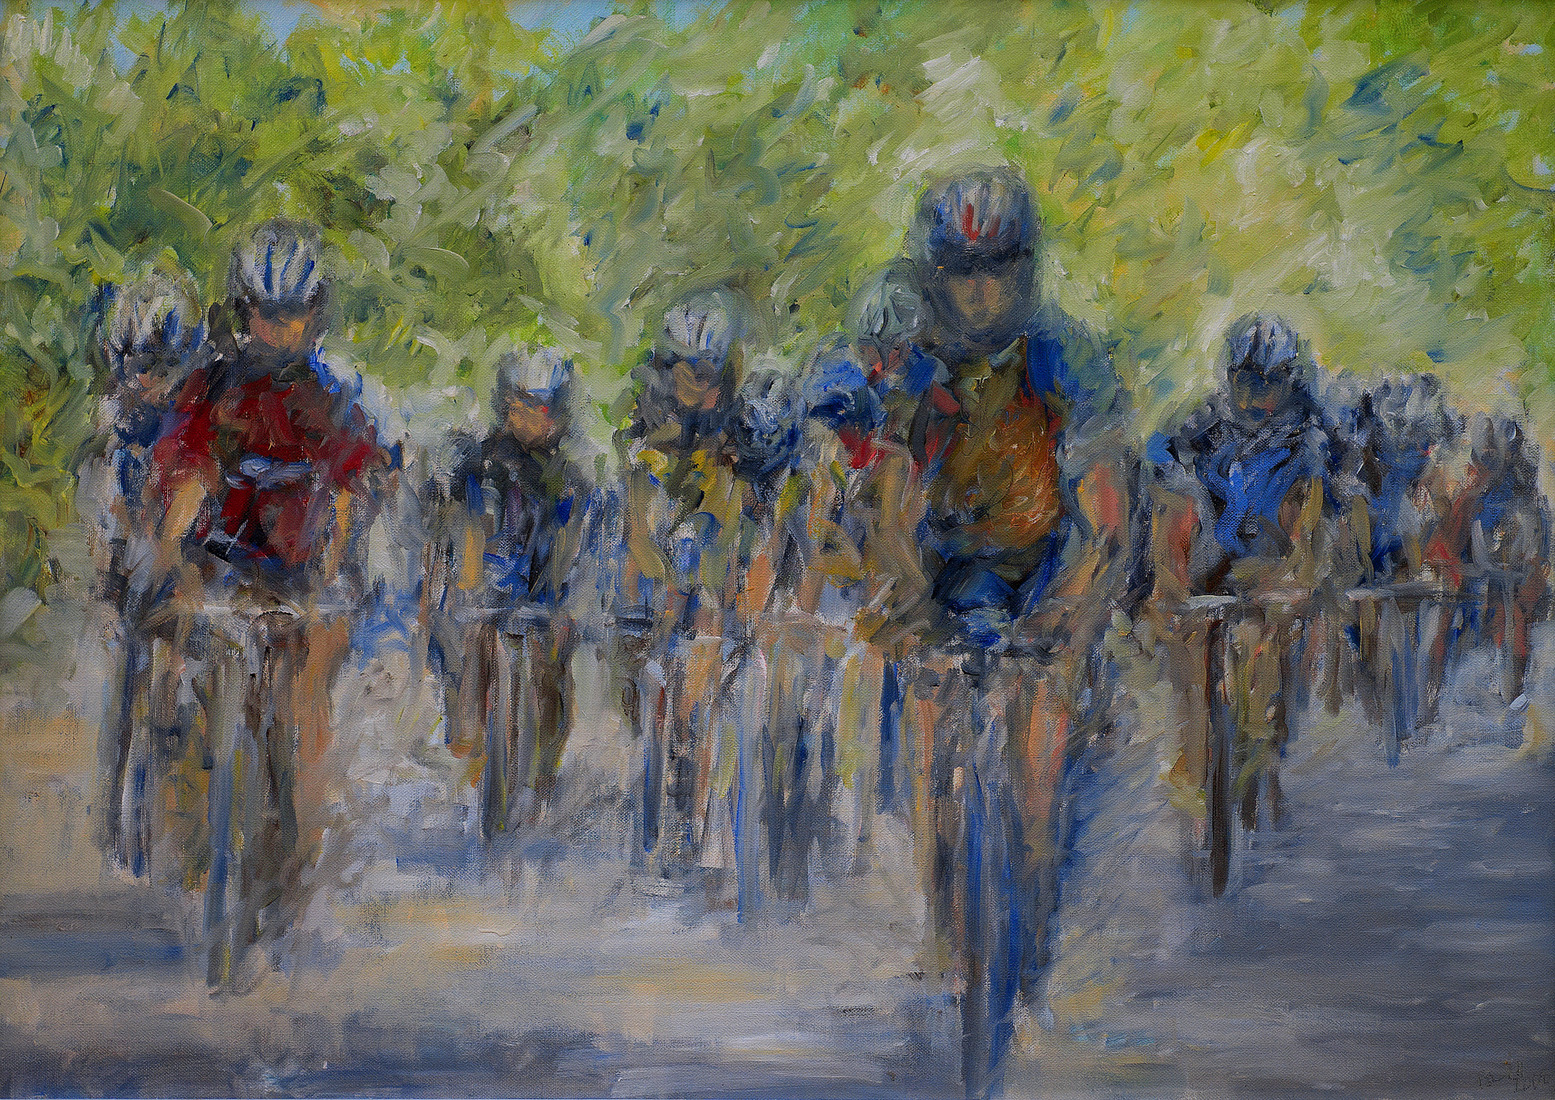 wielrenners onder de platanen, Tour de France